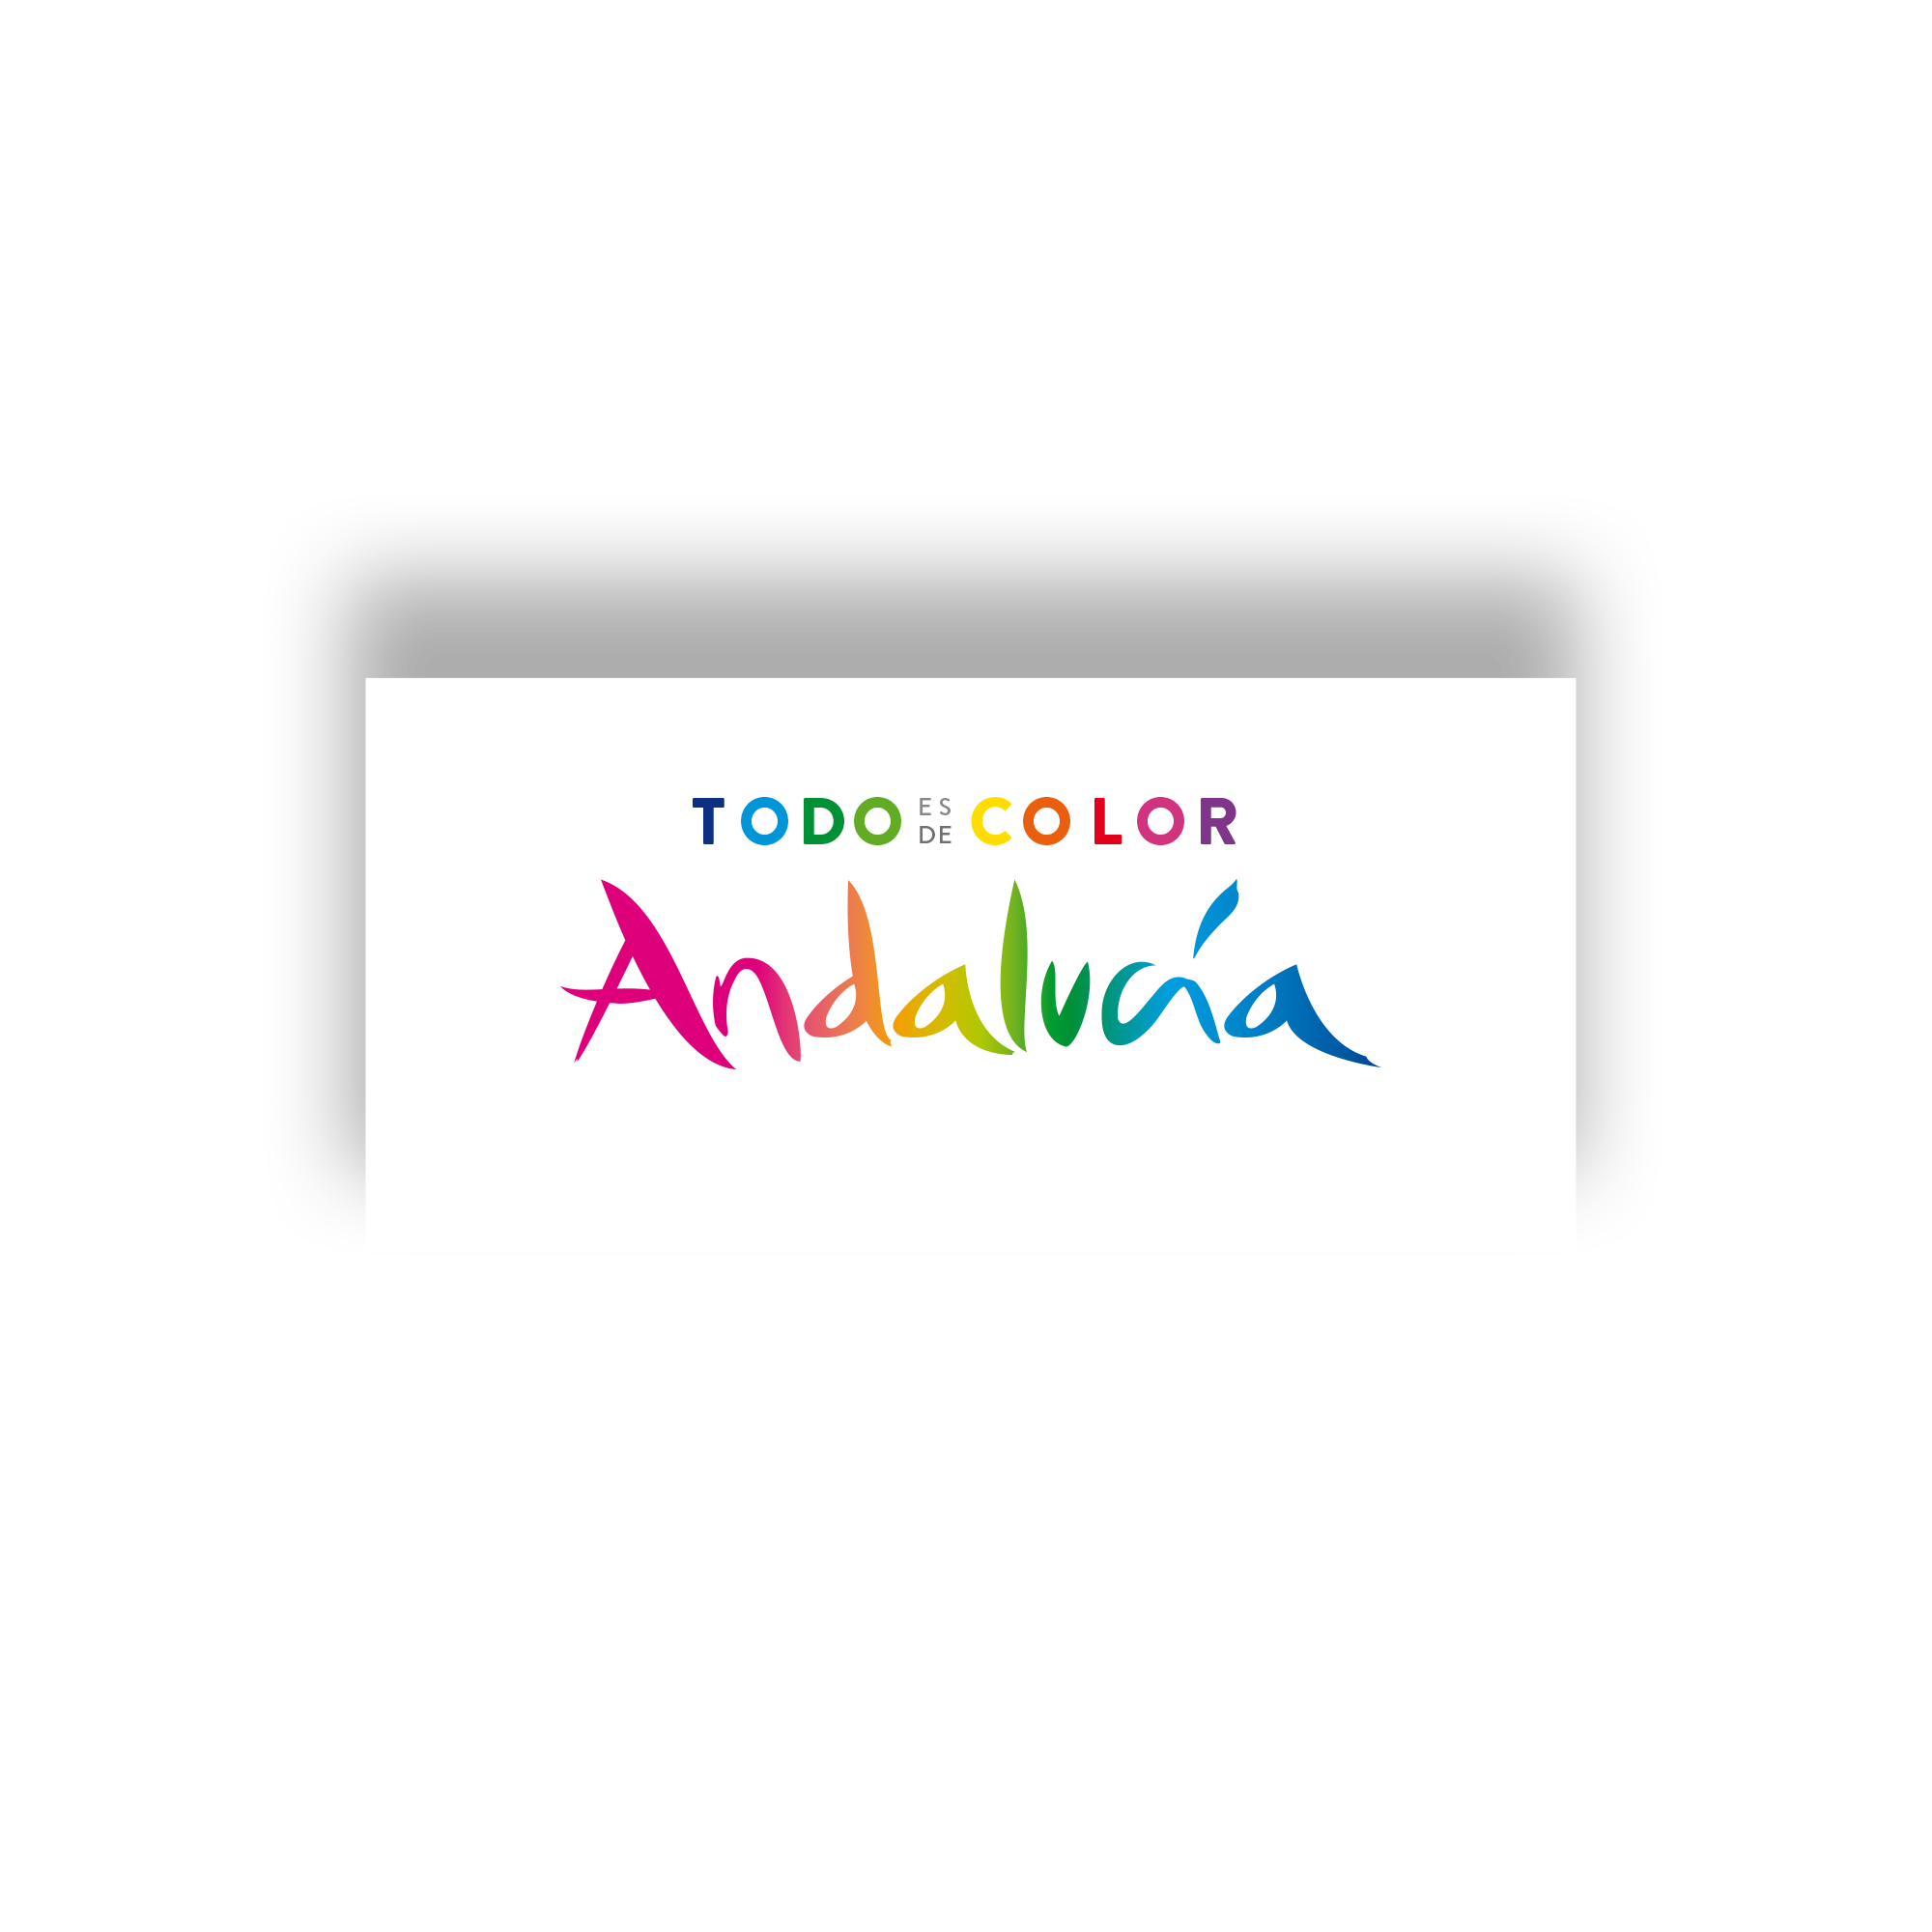 Todo es de color Andalucía